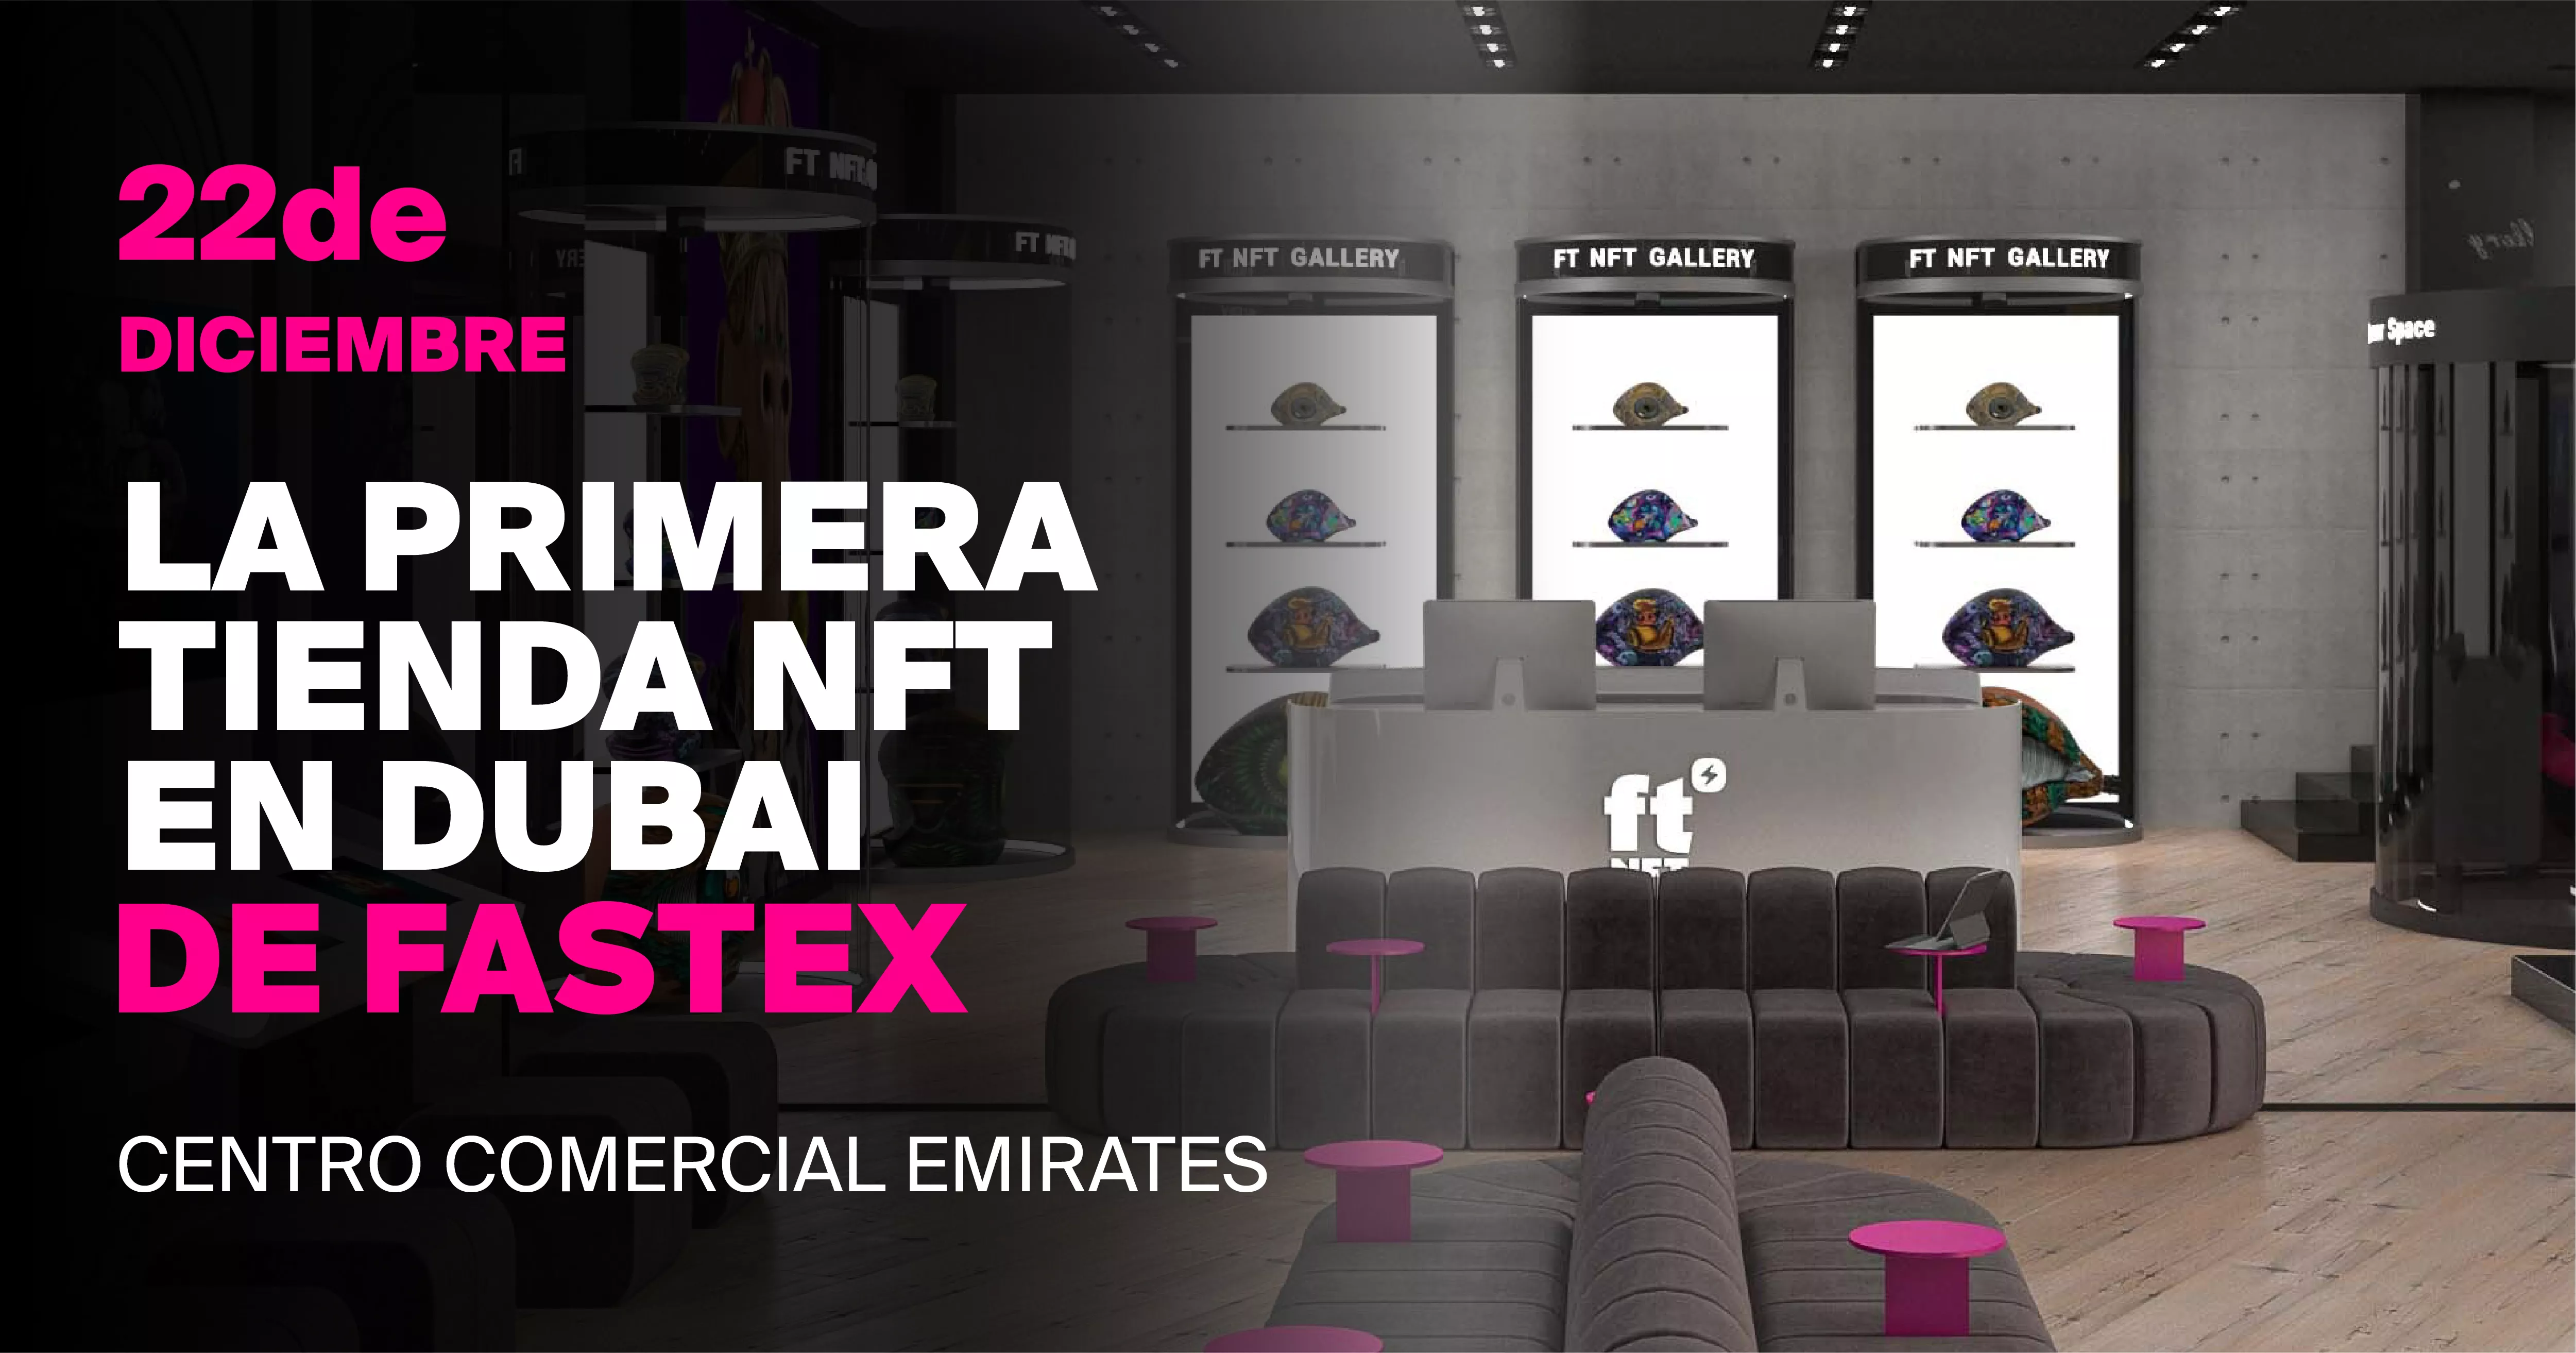 La gran inauguración de la primera tienda física de NFT en Dubái el 22 de diciembre